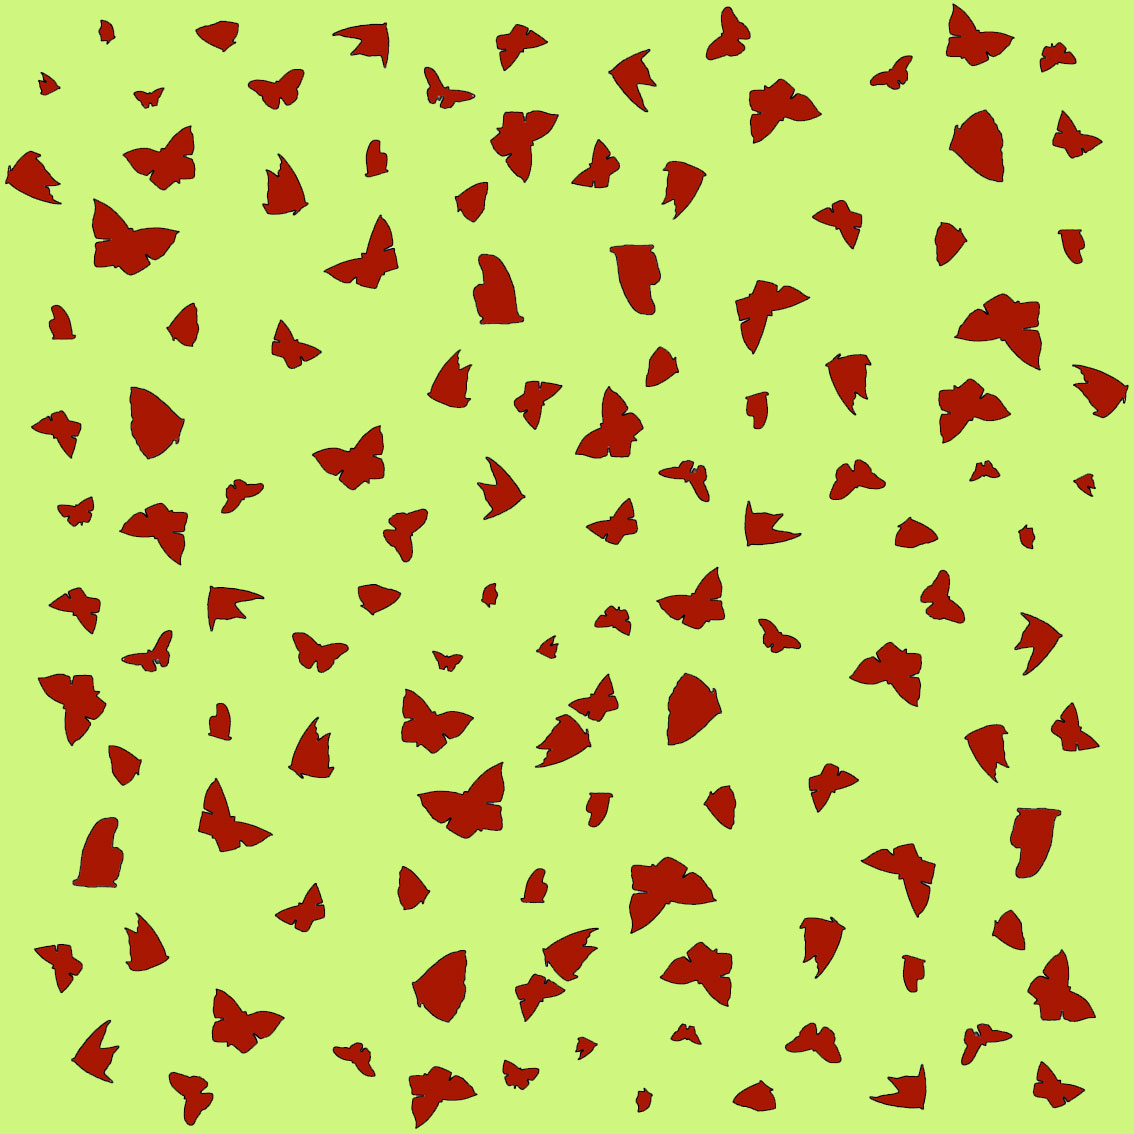 Red Butterflies on Green papillon-lépidoptère-sphynx-aurore-bombyx-paon-du-jour-monarque Thierry Bisch artiste peintre contemporain animaux tableau art décoration biodiversité conservation 